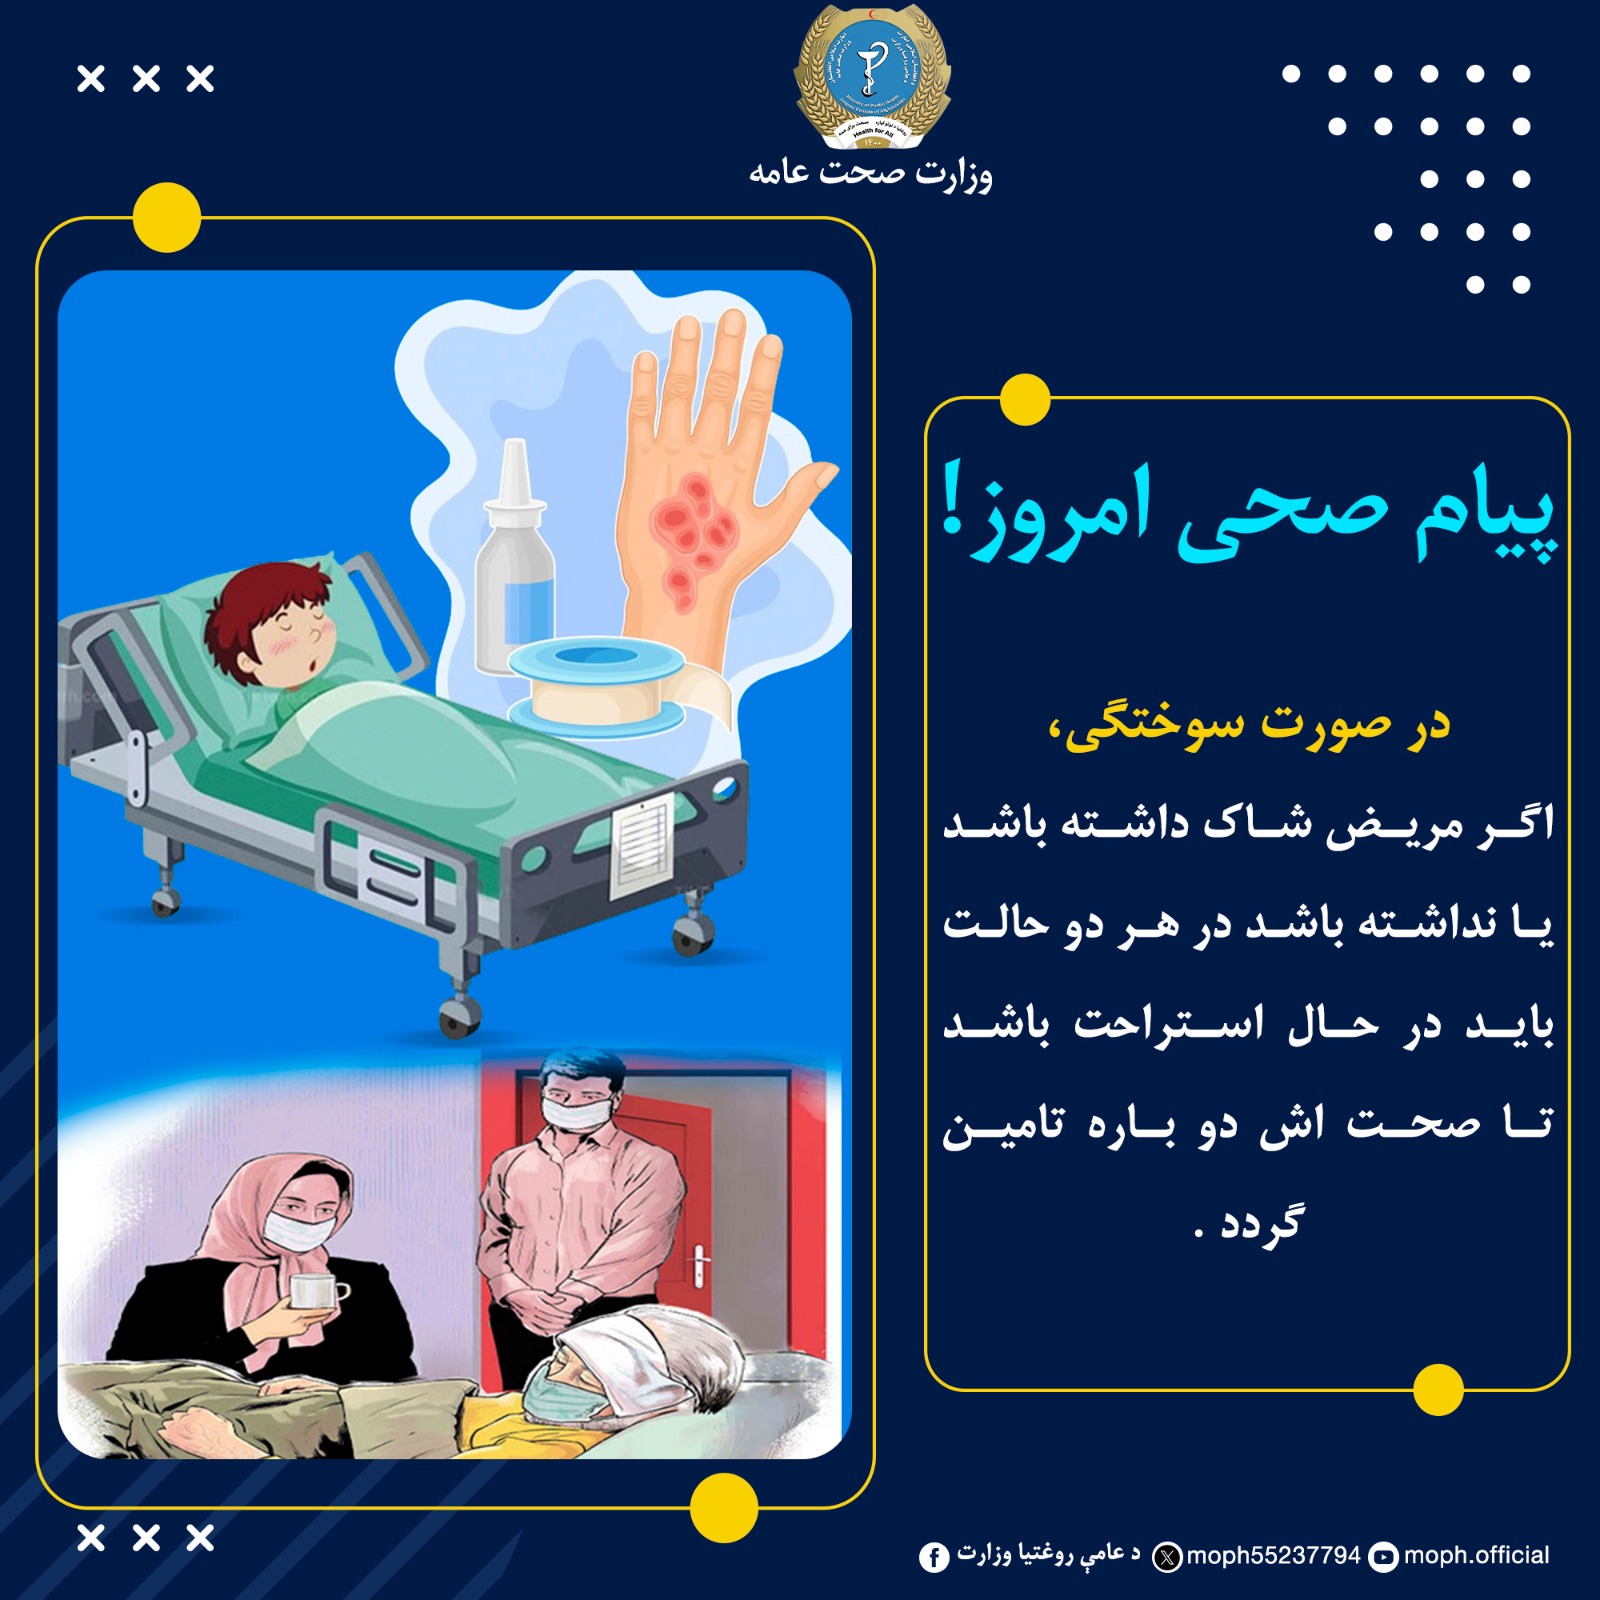 در صورت سوختگی، اگر مریض شاک داشته باشد یا نداشته باشد در هر دو حالت باید در حال استراحت باشد تا صحت اش دو باره تامین گردد .